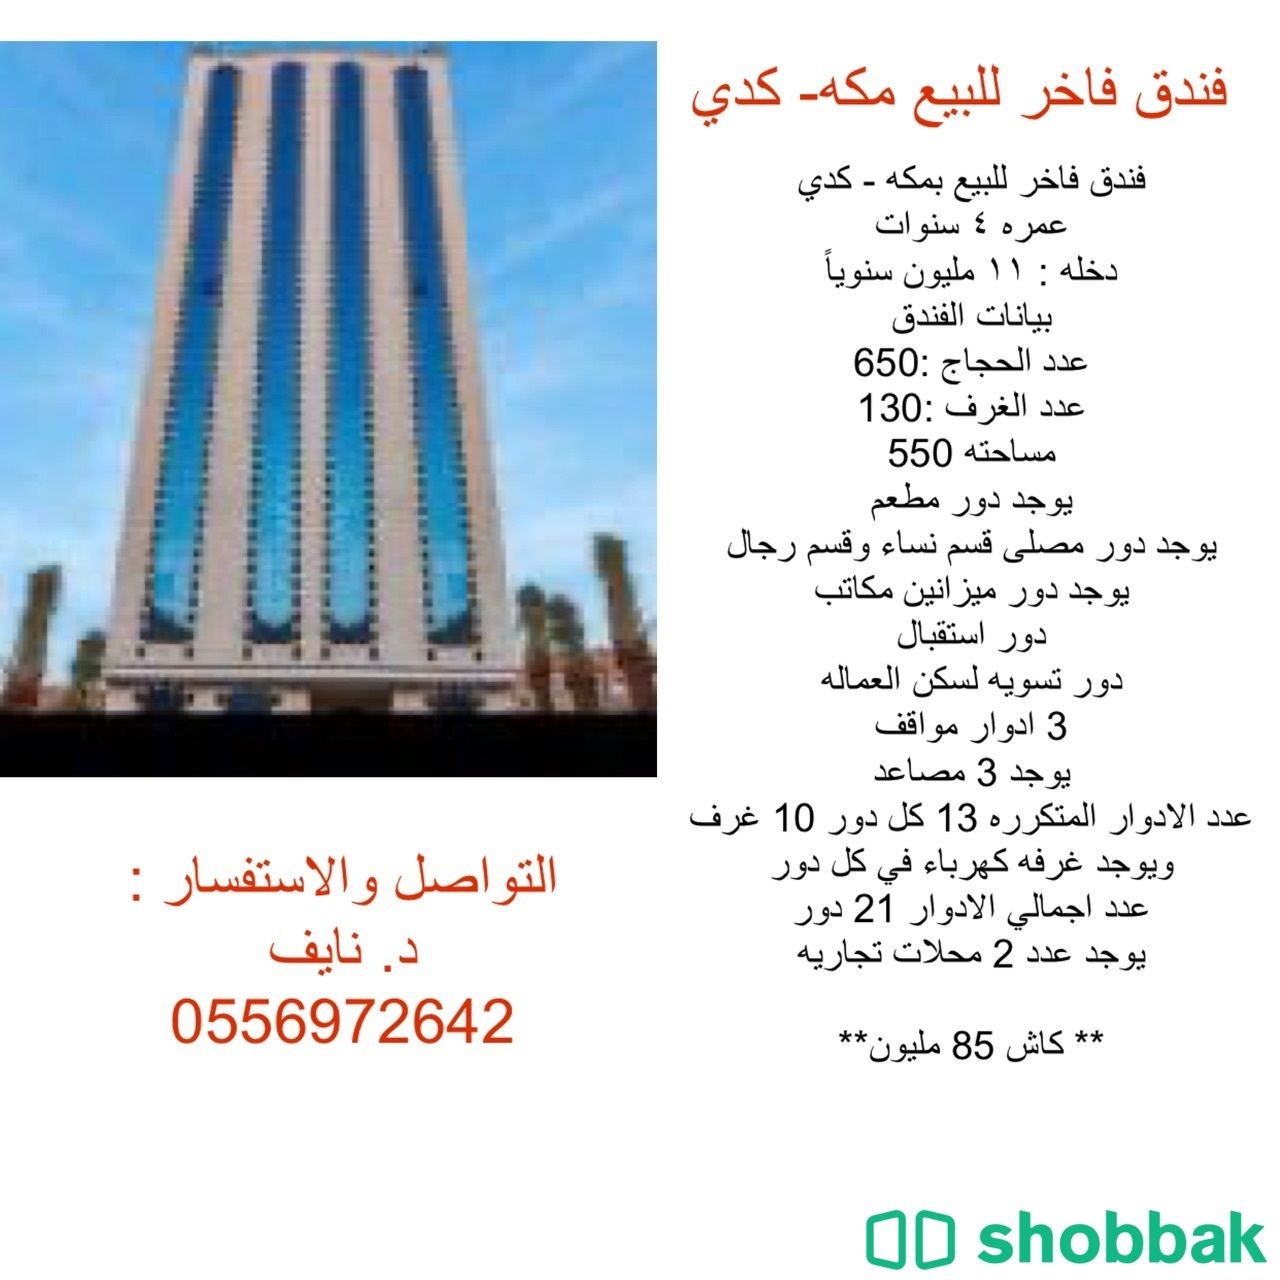 فندق فاخر للبيع مكه - كدي Shobbak Saudi Arabia